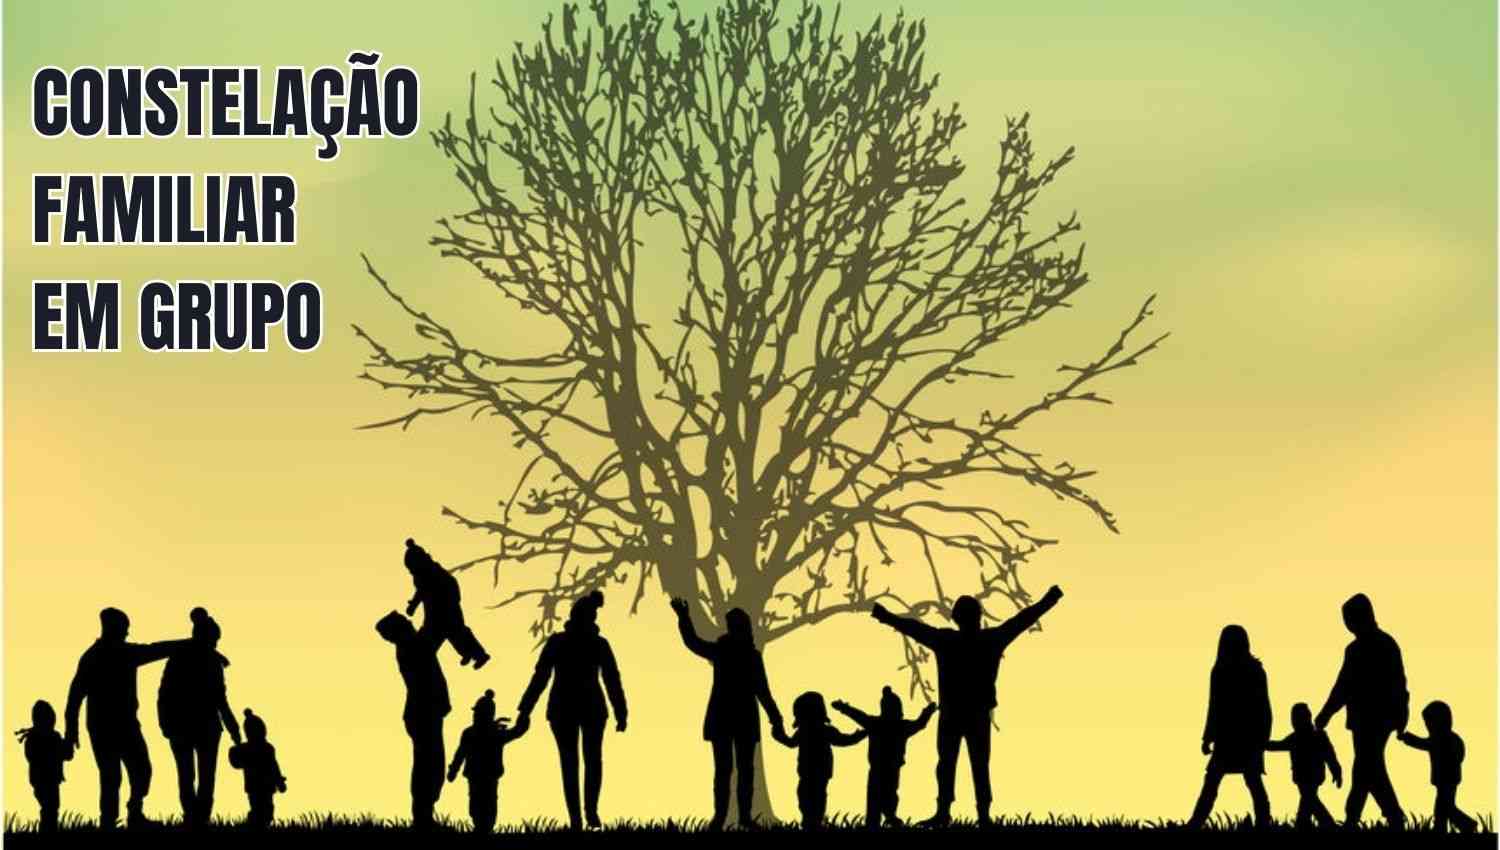 imagem de várias famílias representando a Constelação Familiar em Grupo e uma árvore